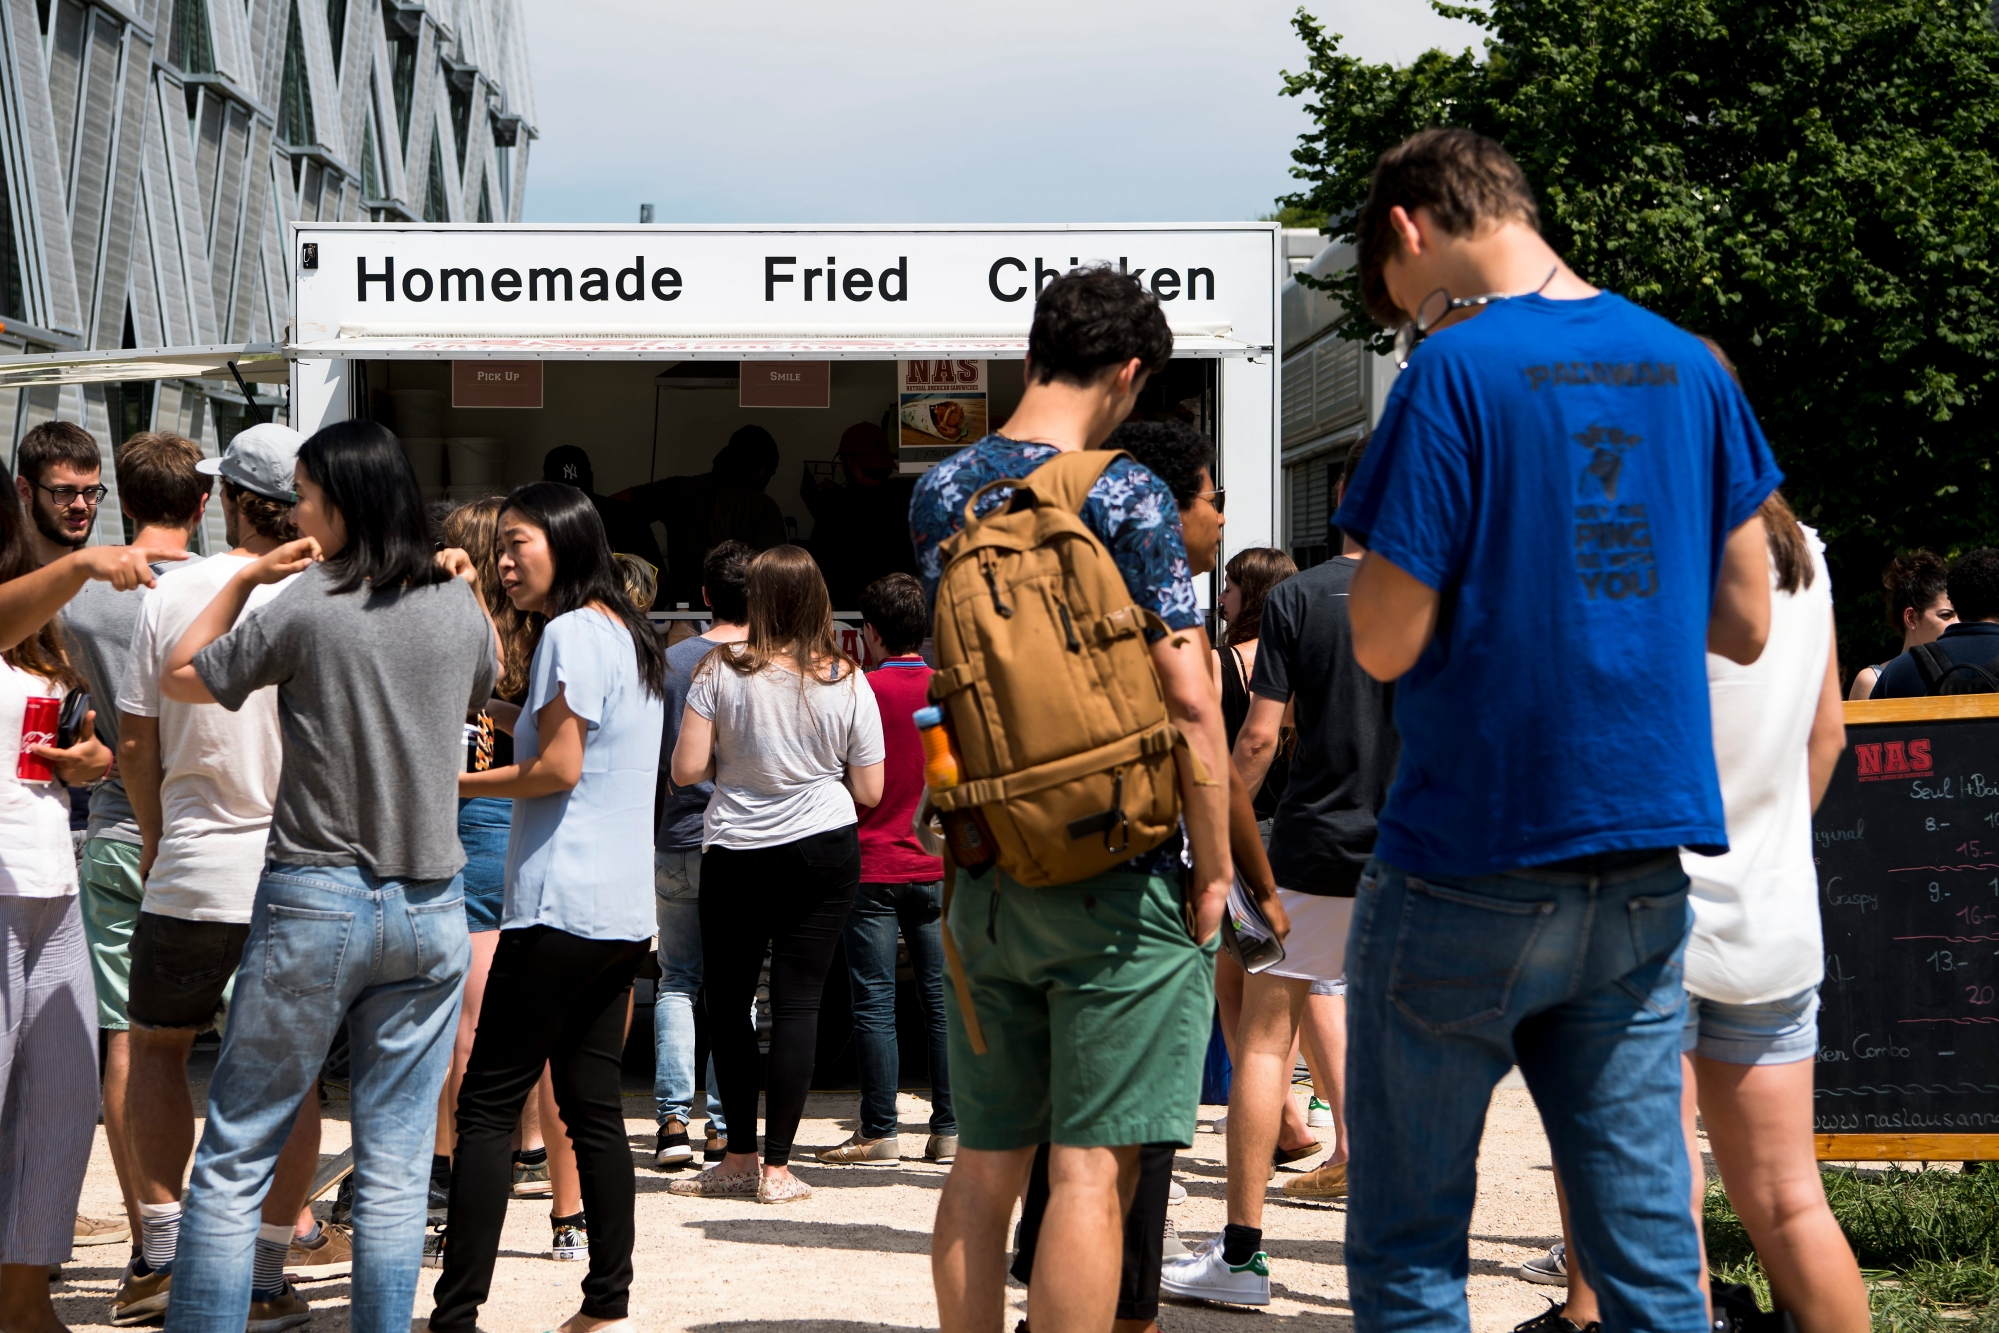 Des etudiants attendent pour acheter a manger lors de la pause de midi, devant un Food Truck, disponible sur le campus de l'EPFL ce mardi 13 juin 2017 a Lausanne. (KEYSTONE/Jean-Christophe Bott) SCHWEIZ FOOD TRUCK FESTIVAL